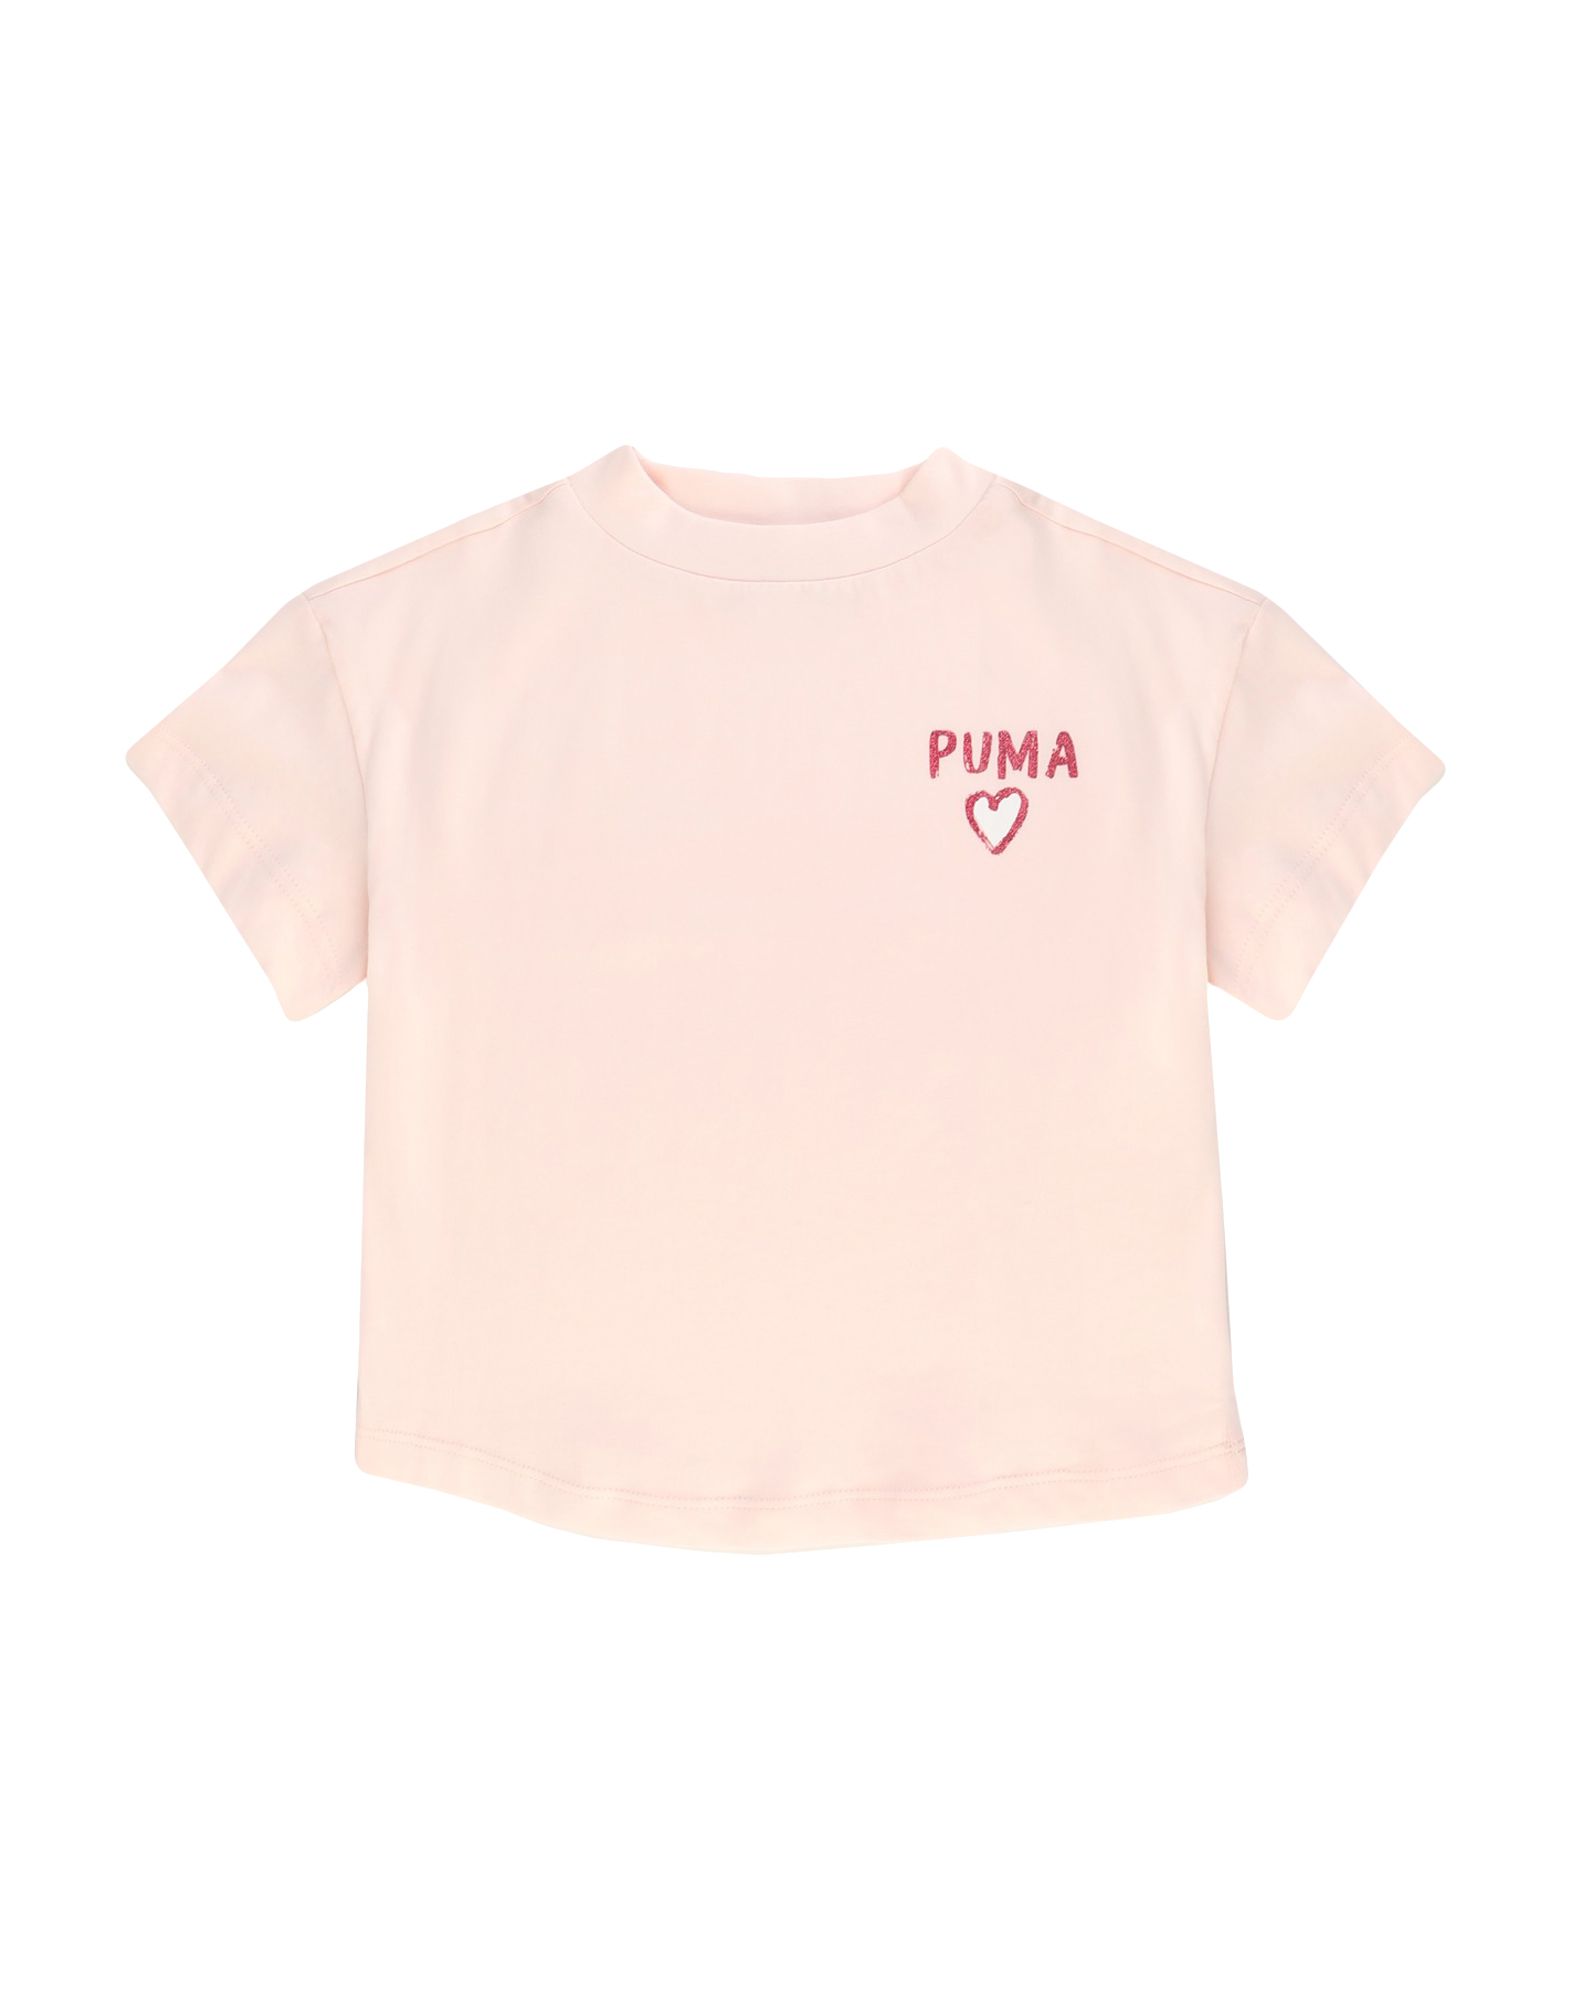 Shop Puma Alpha Trend Tee G Toddler Girl T-shirt Light Pink Size 4 Cotton